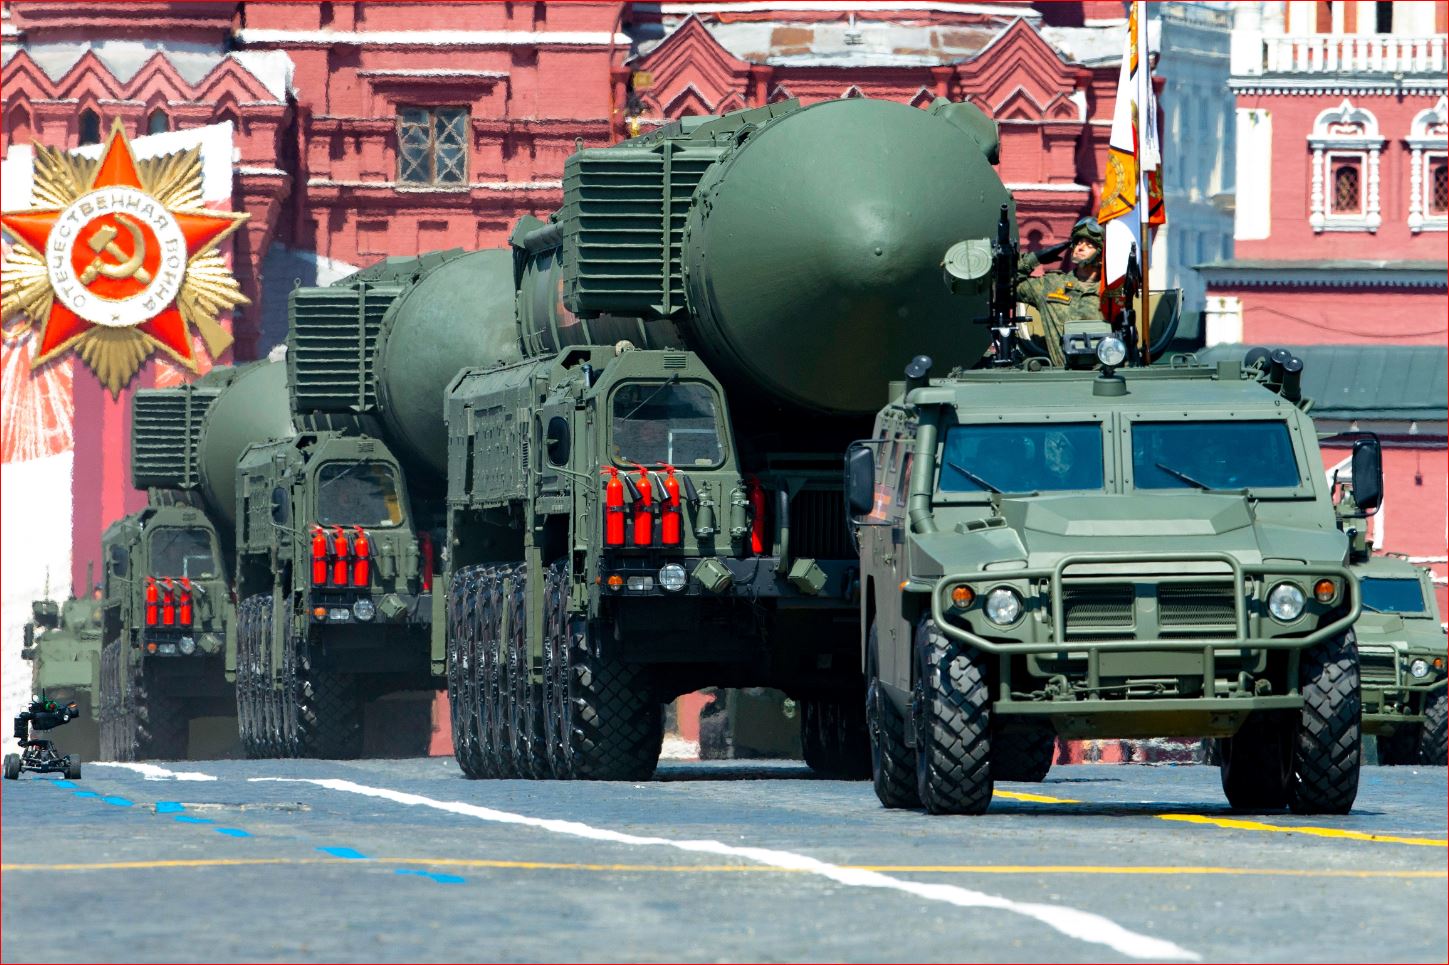 Një sinjal për Perëndimin?! Pamjet shokuese tregojnë karvanin “e vdekjes” së Putinit, ku po drejtohen armët bërthamore